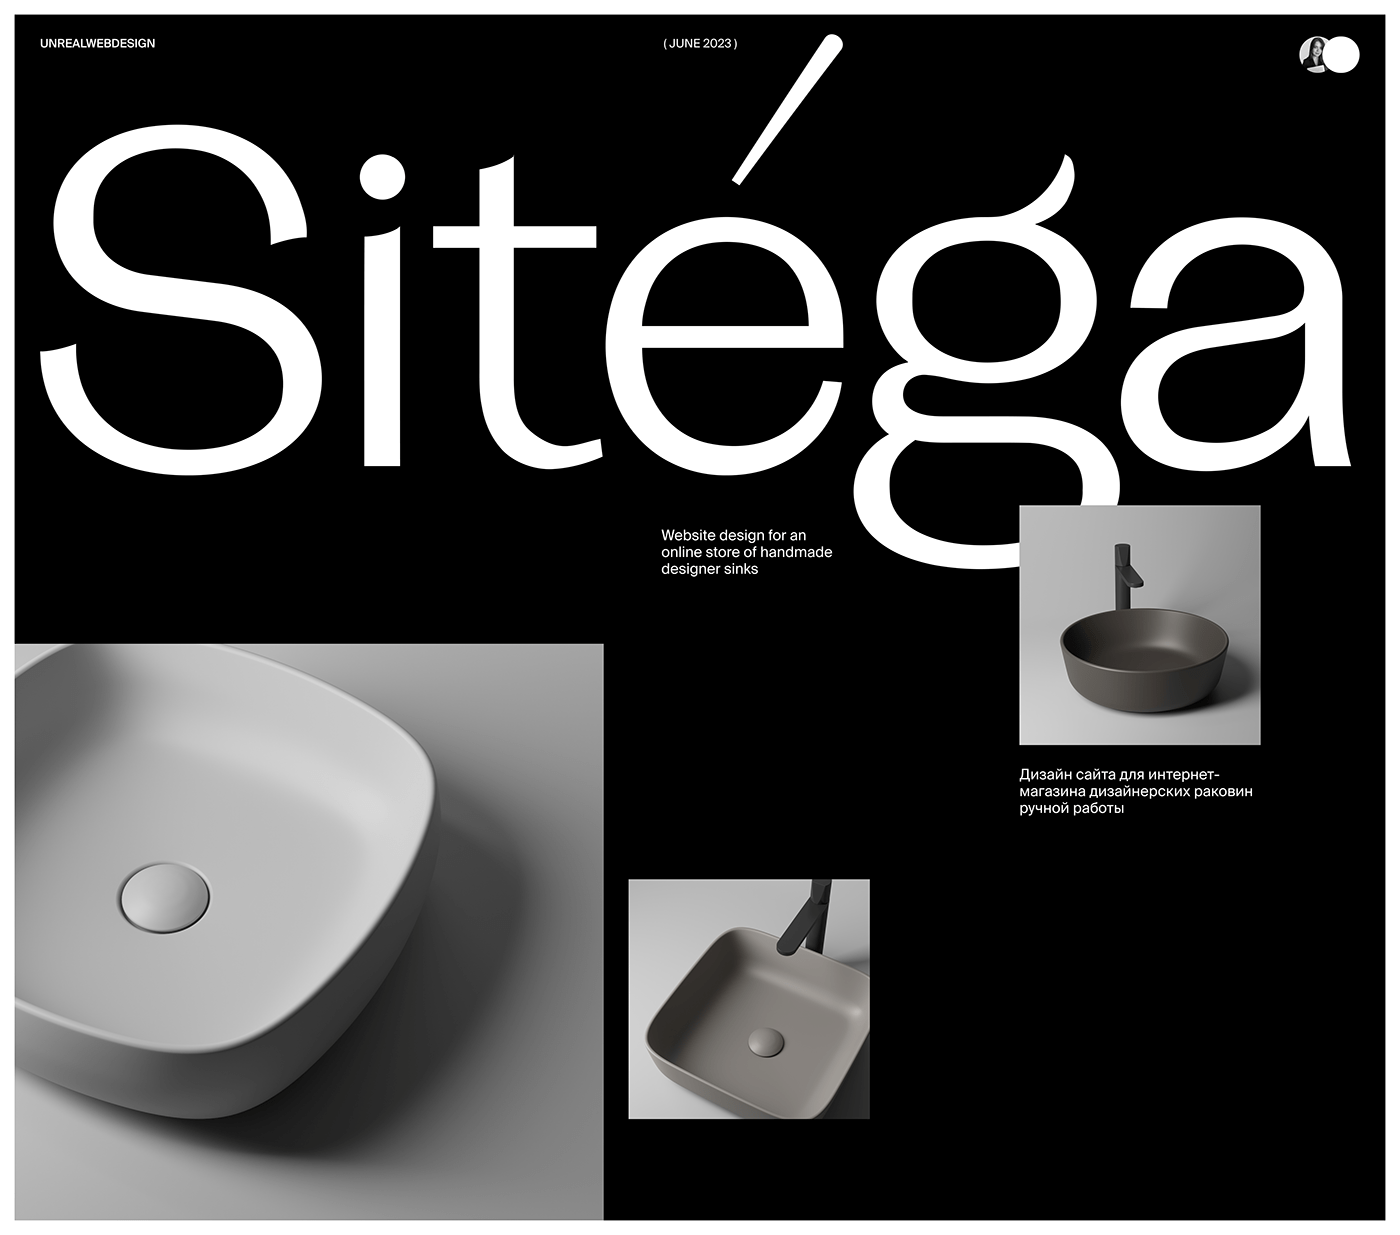 sinks Ecommerce Website handmade design designer brand identity